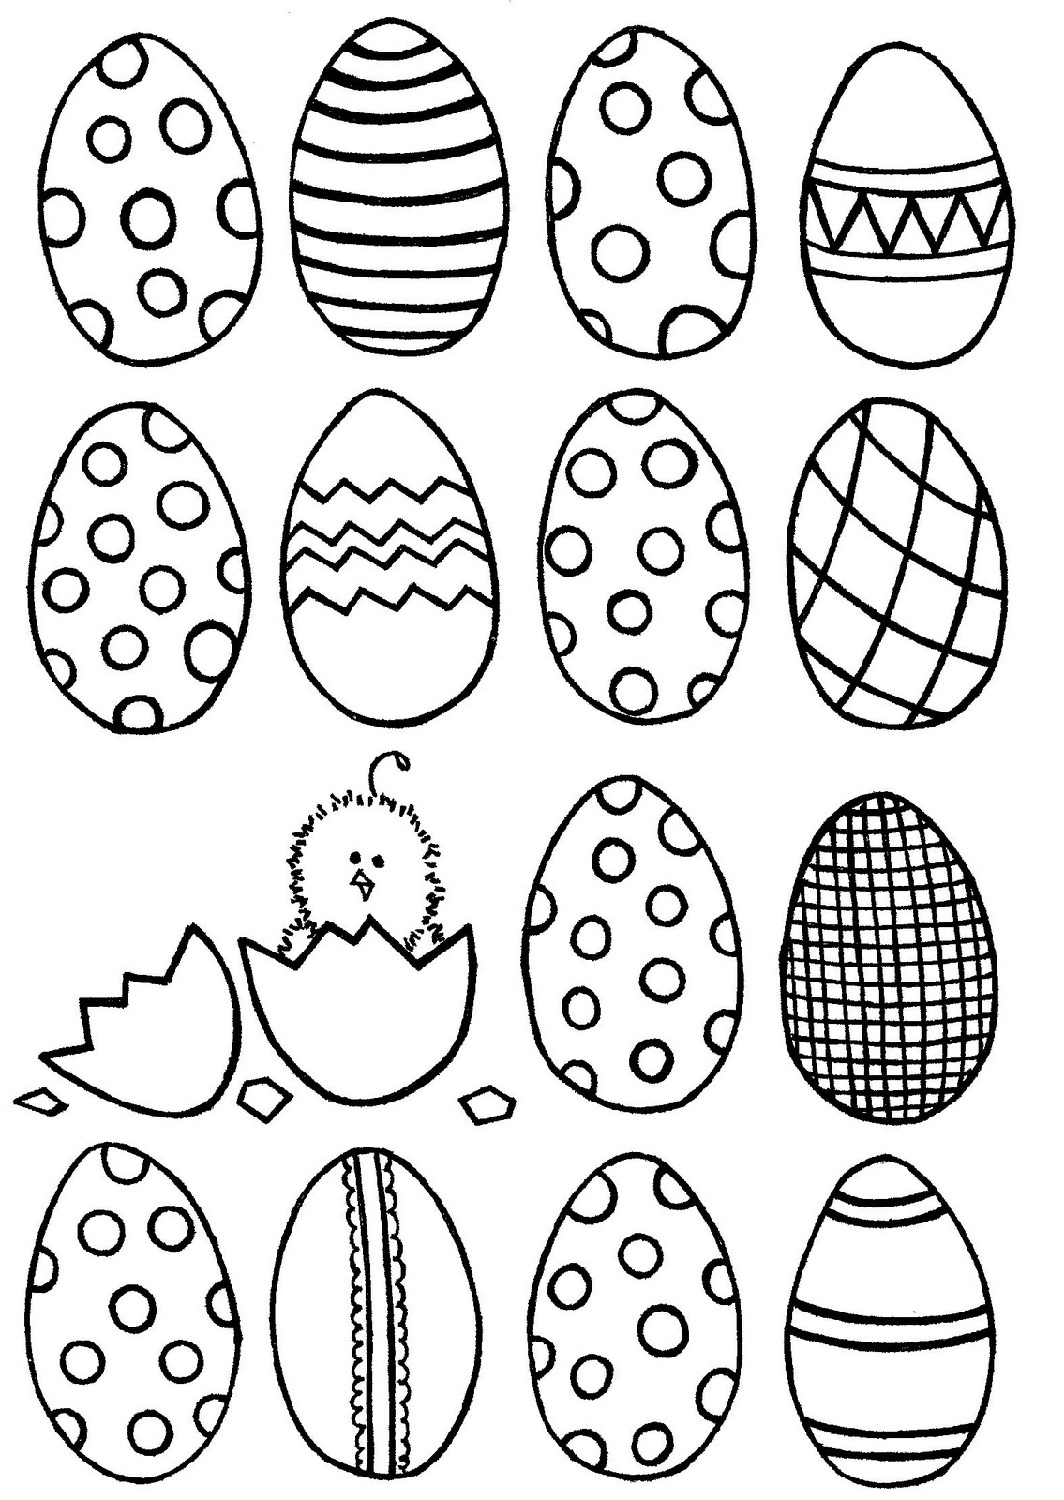 Easter Egg Template Free Printable - Printable Templates